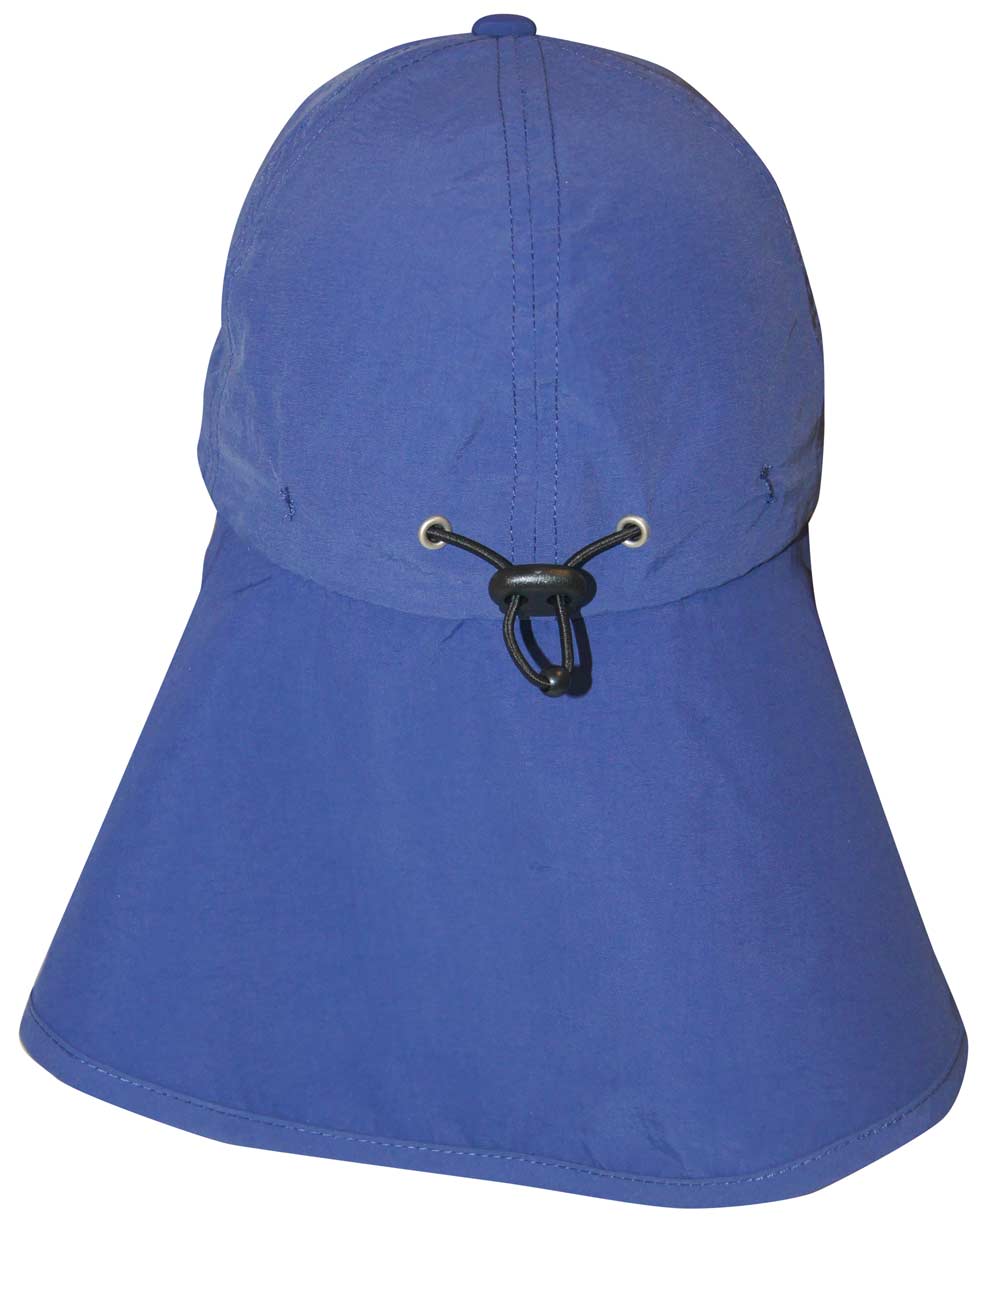 Schutz Logo Kappe mit Nackenschutz recycelt blau back